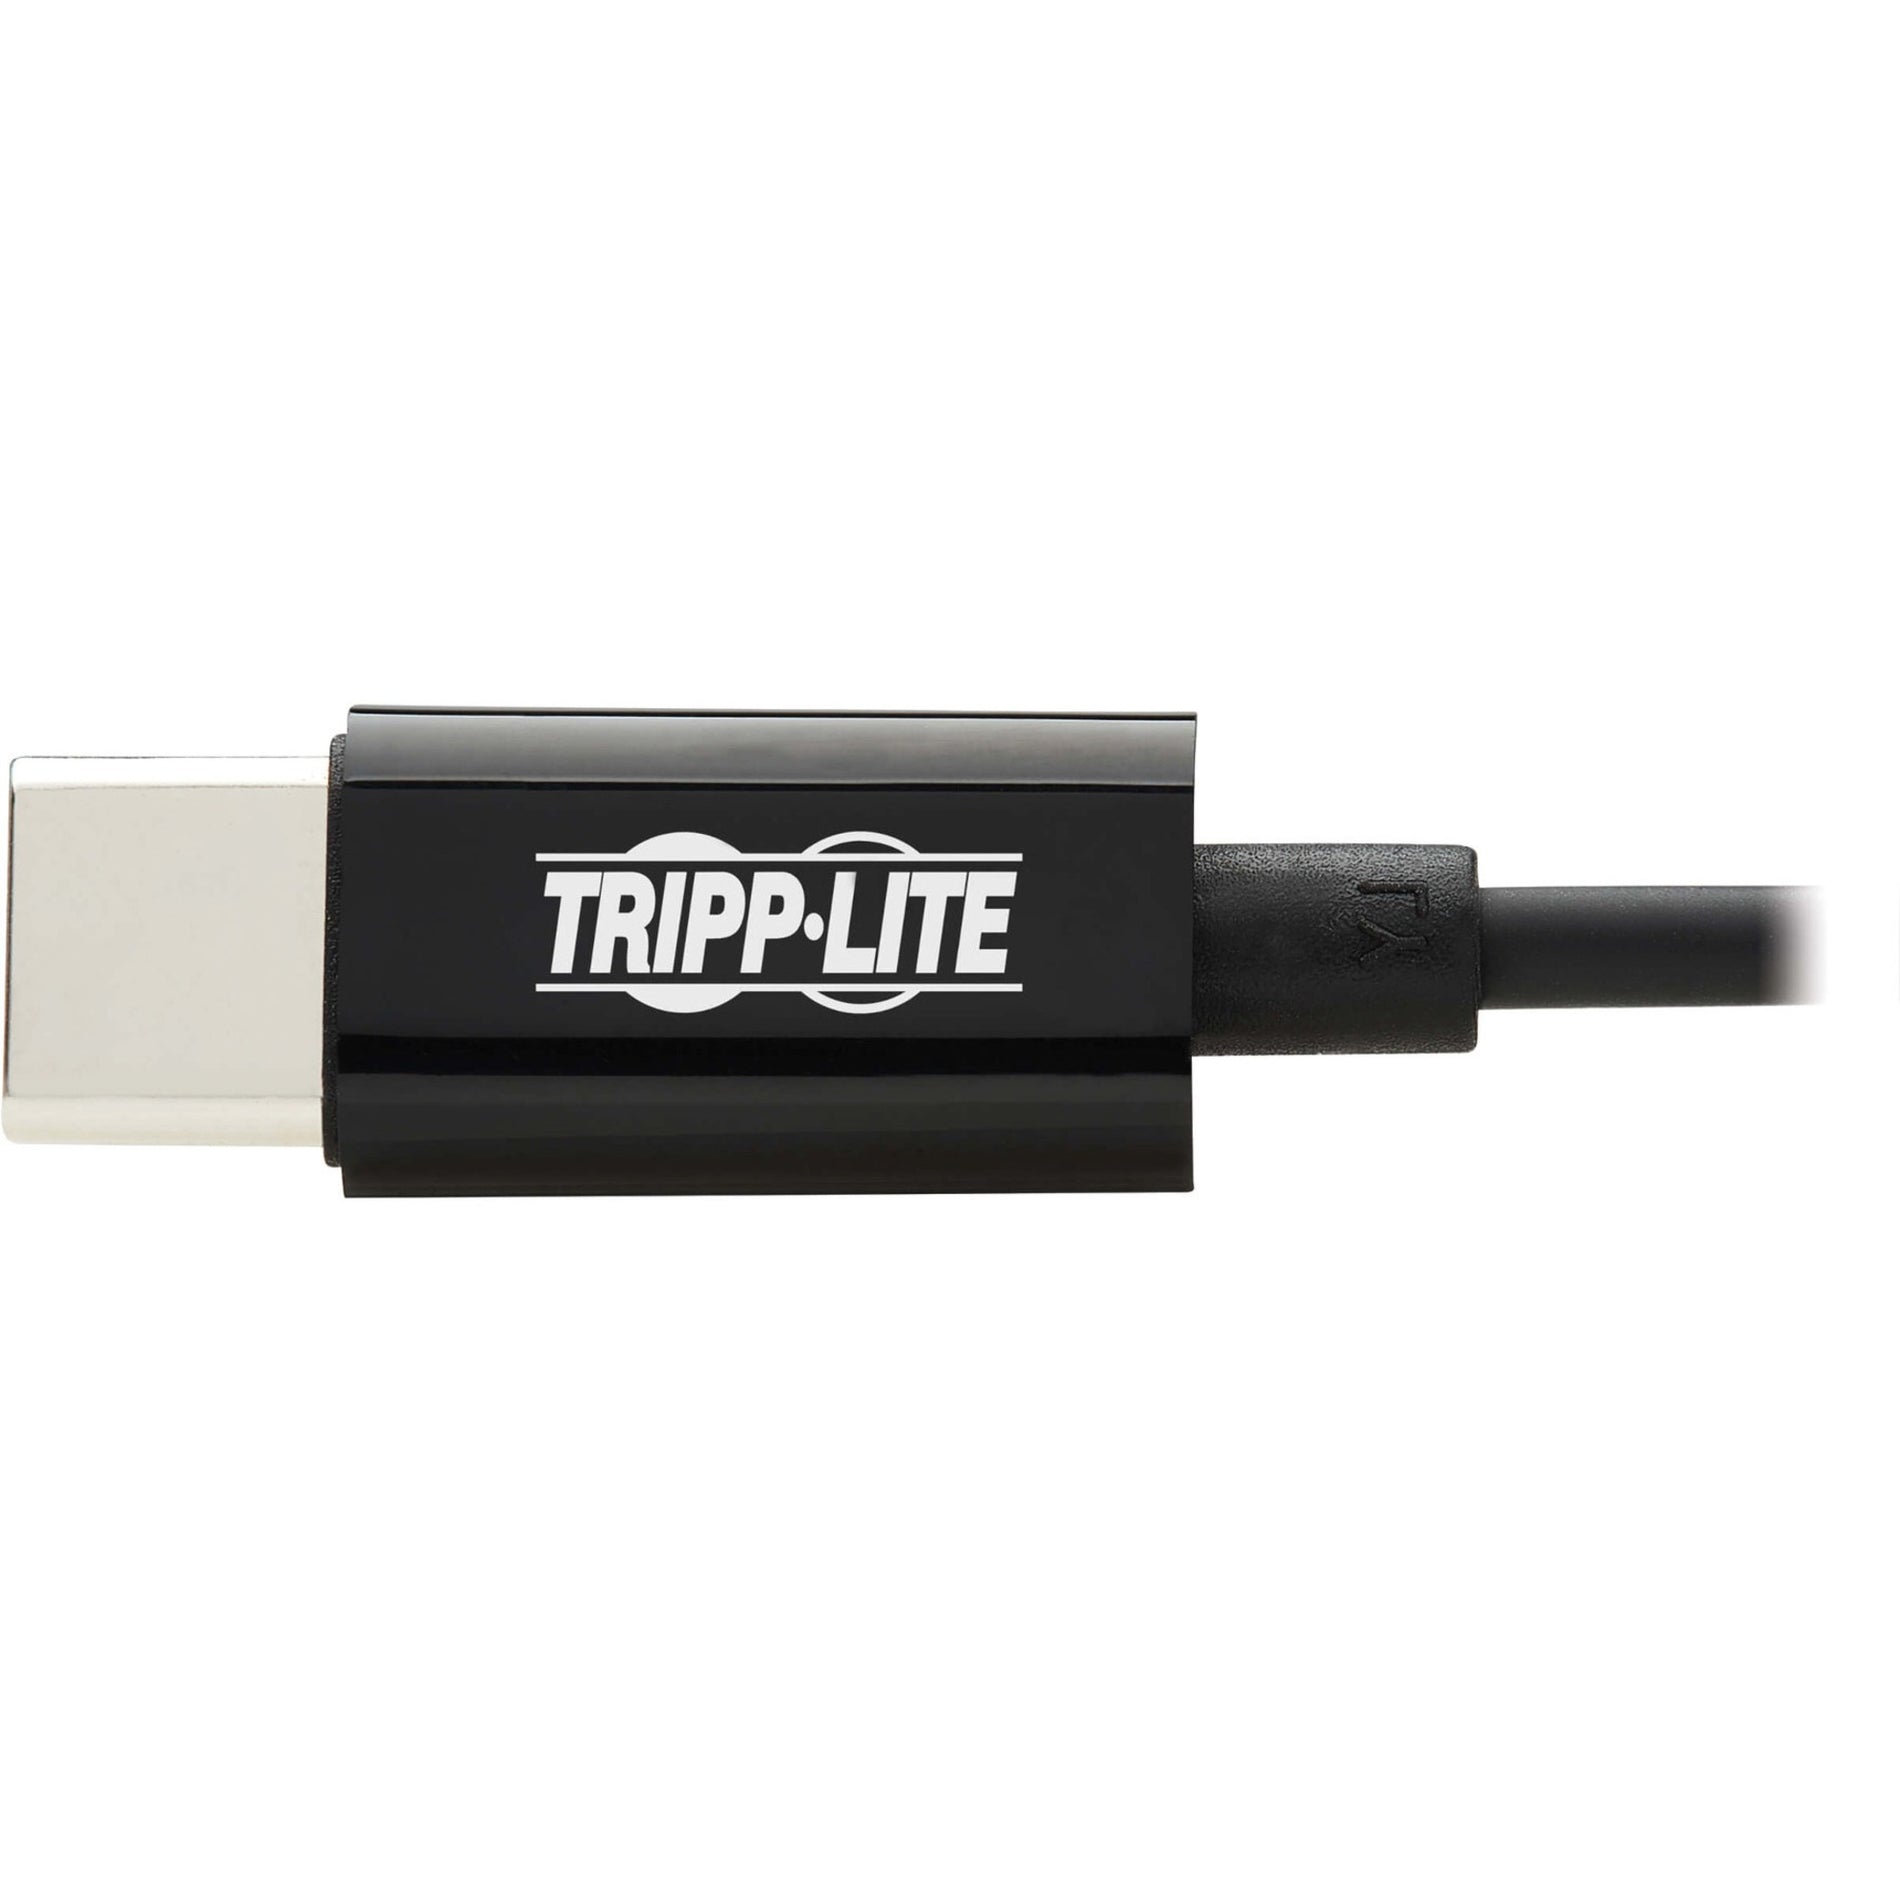 特力宝 U437-001 USB-C 到 3.5 毫米耳机插头适配器，即插即用，7.92英寸电缆，黑色 特力宝